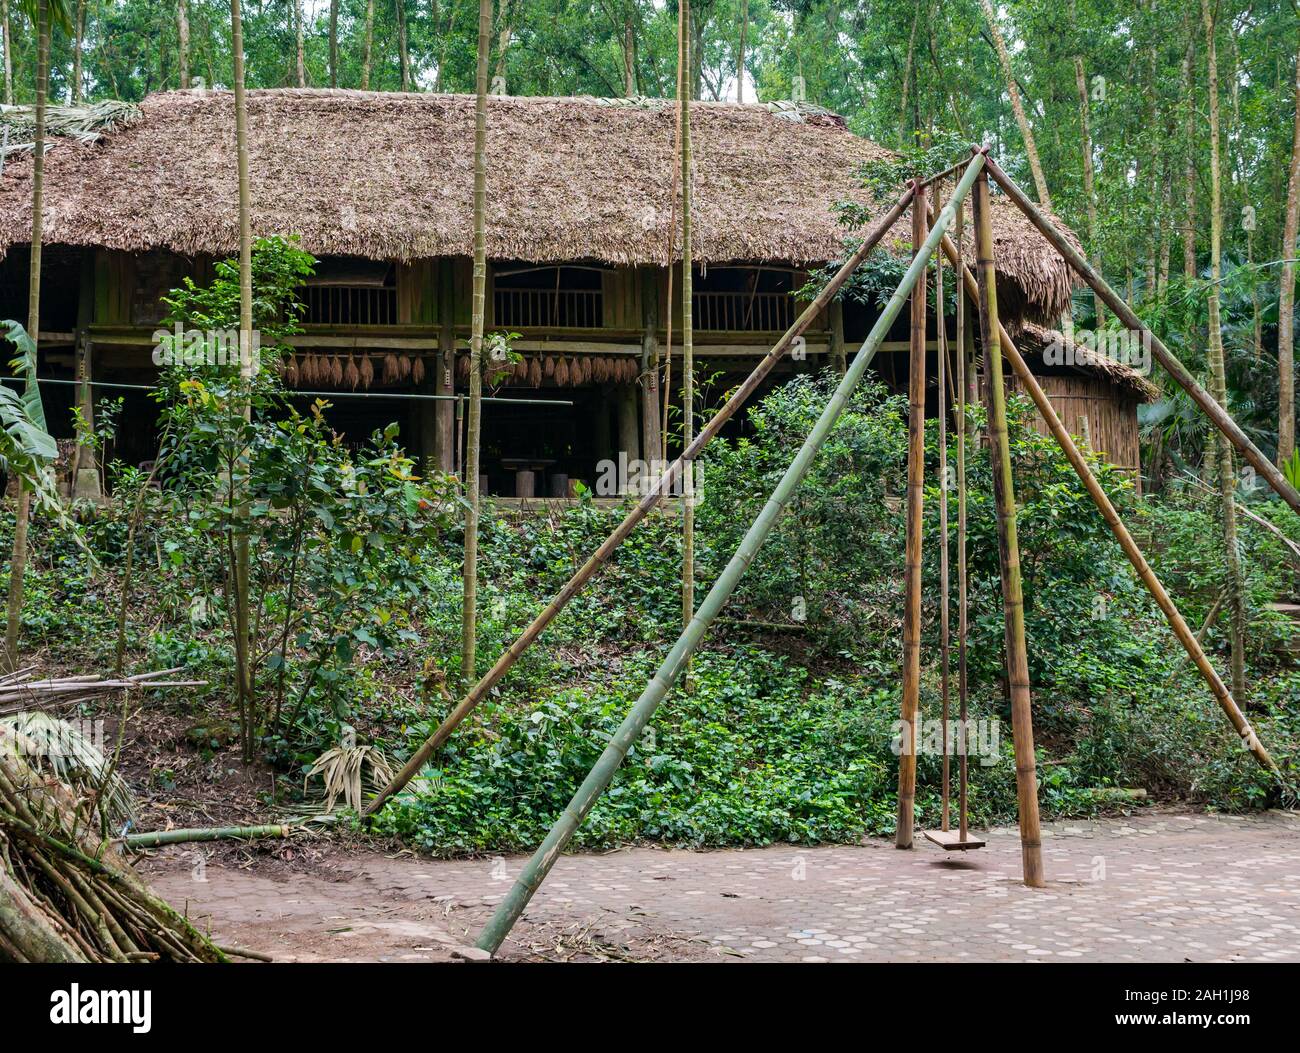 Traditionellen Stelzenhaus mit Schaukel, Thai Hai ethnischen Dorf leben, Thai Nguyen, Provinz Northern Vietnam, Asien Stockfoto